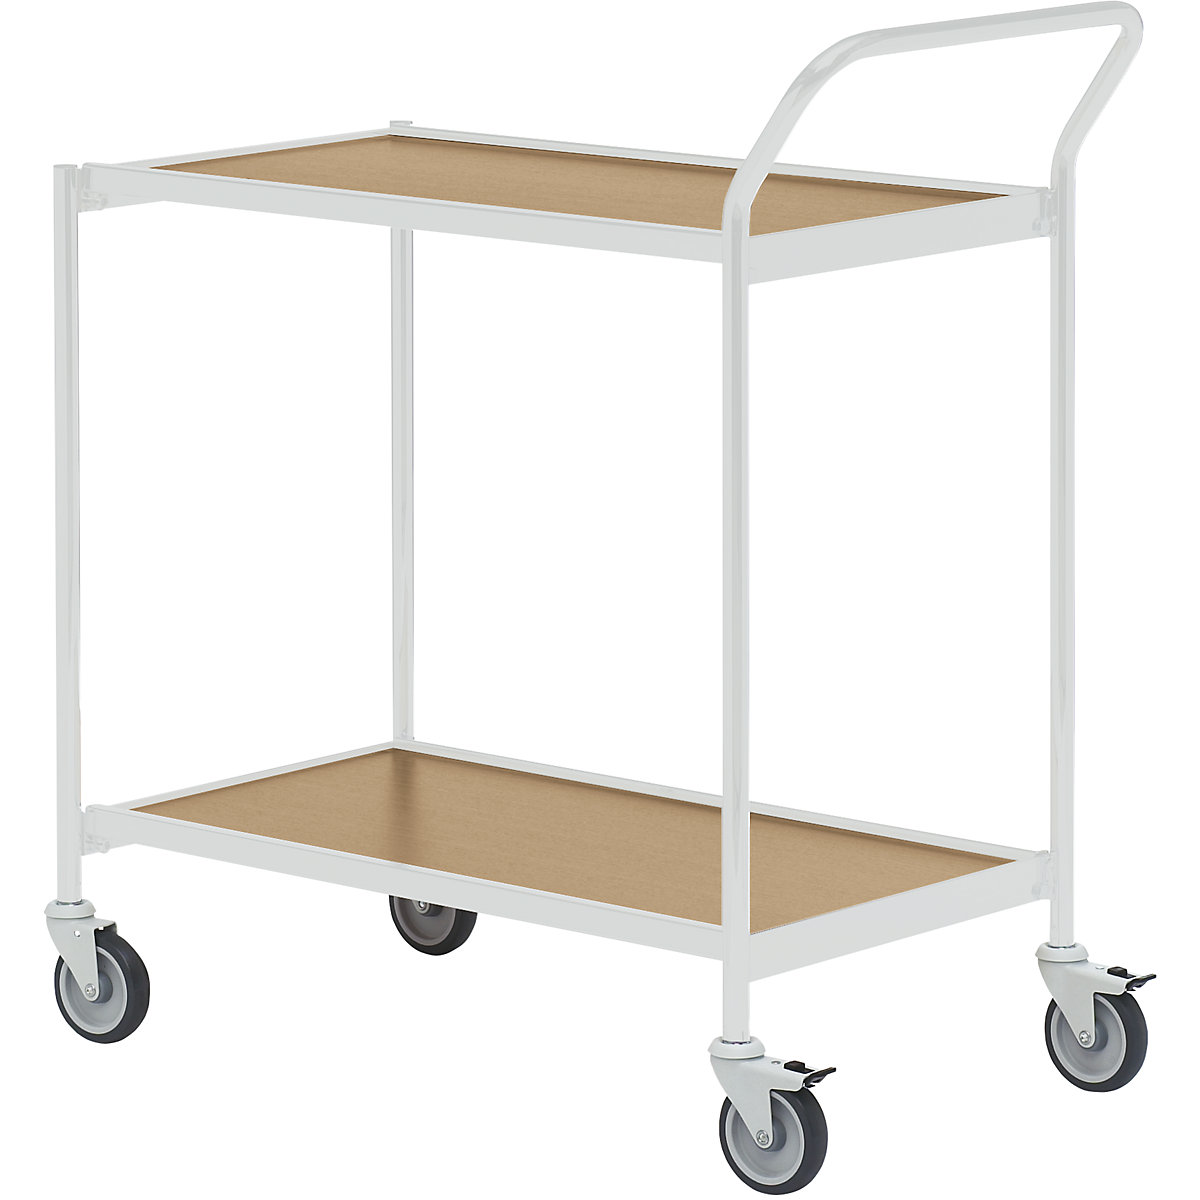 Stolový vozík – HelgeNyberg, 2 etáže, d x š 800 x 420 mm, šedá / dub, od 5 ks-15